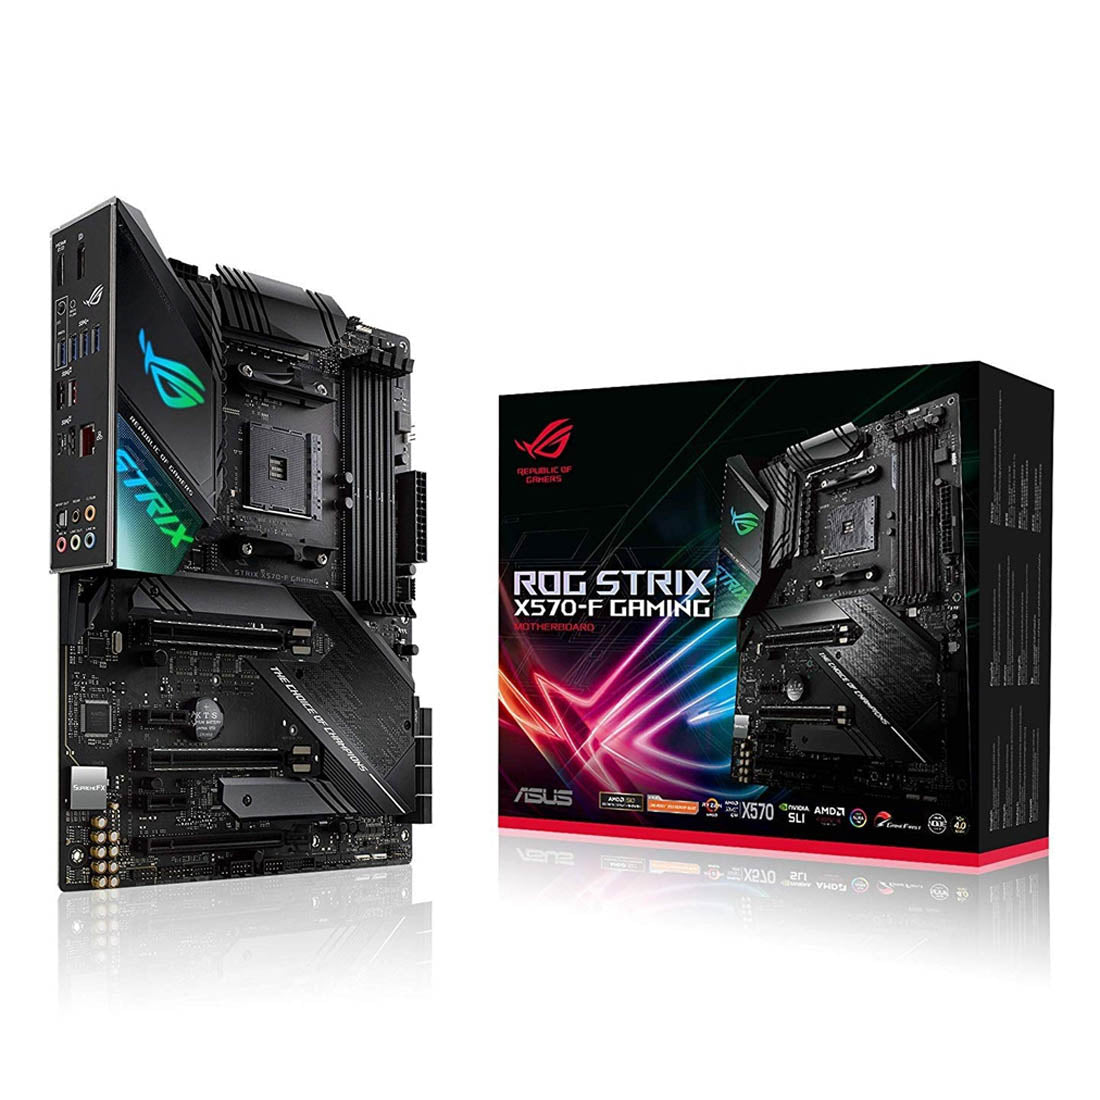 [रिपैक्ड] ASUS ROG STRIX X570-F AMD AM4 ATX गेमिंग मदरबोर्ड PCIe 4.0 Aura Sync और डुअल M.2 के साथ